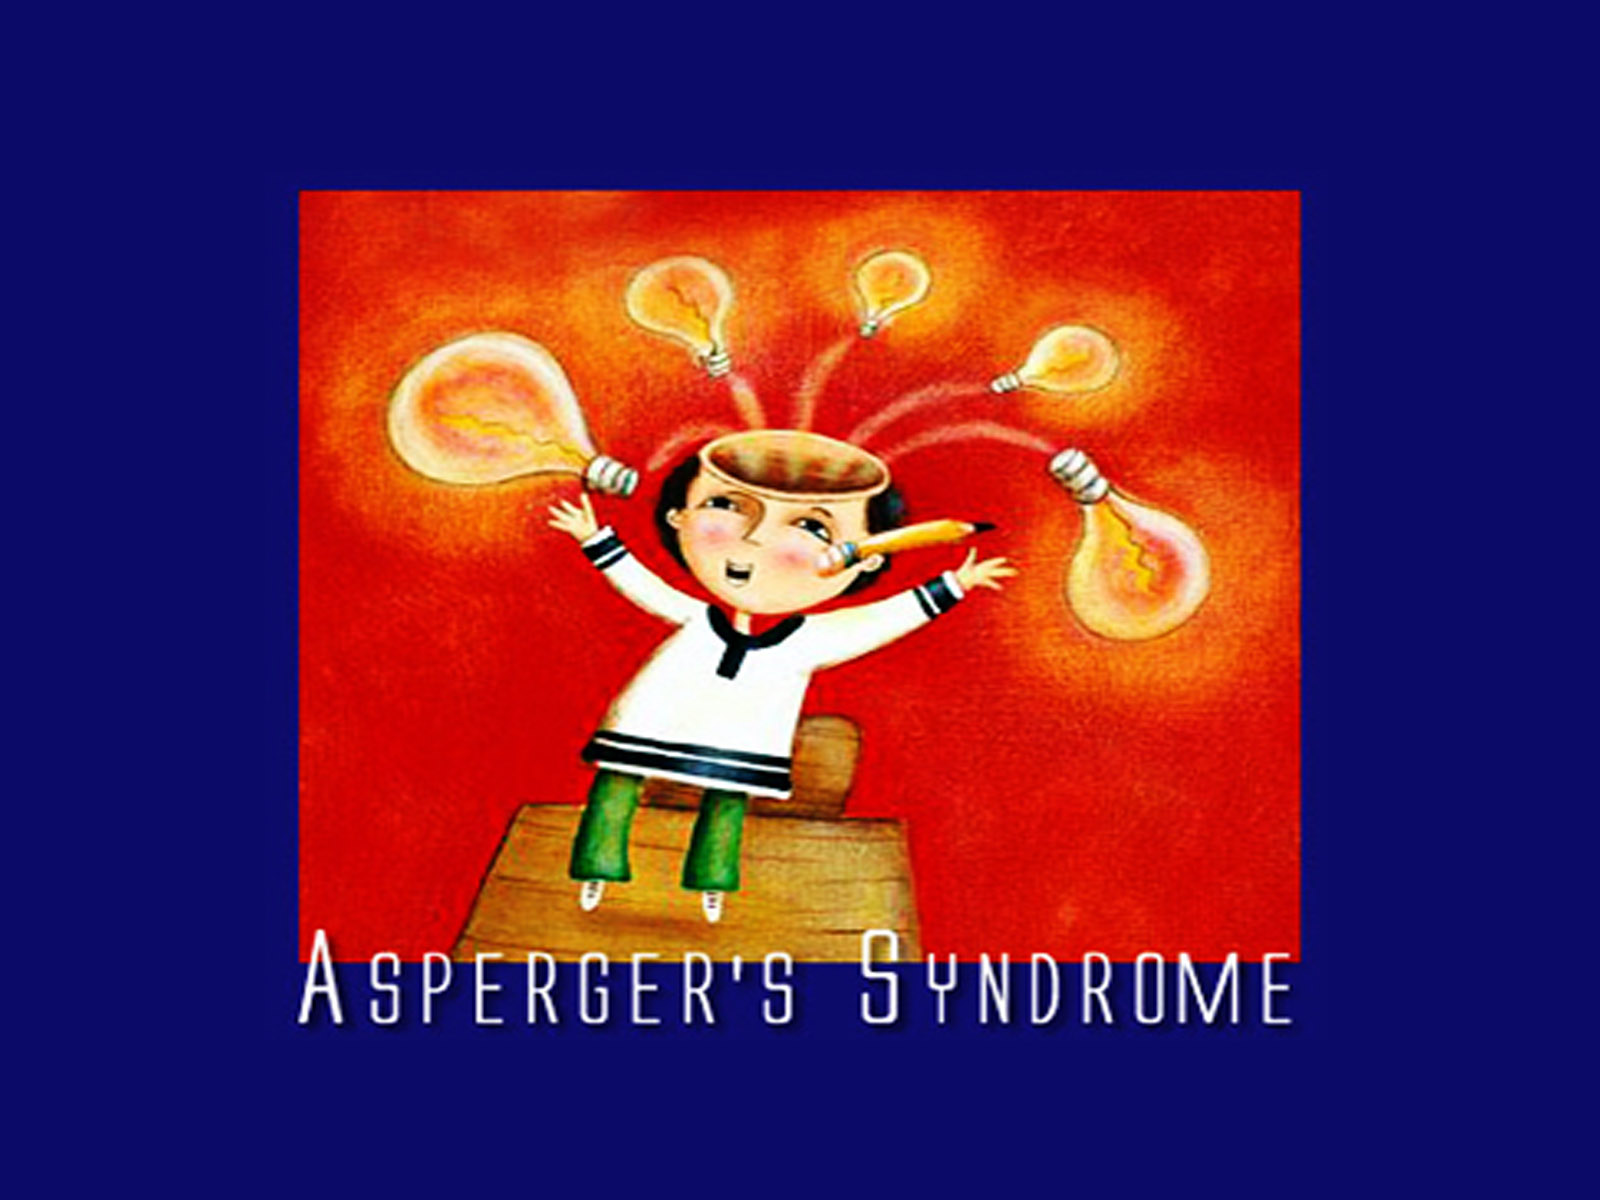 Σύνδρομο Asperger